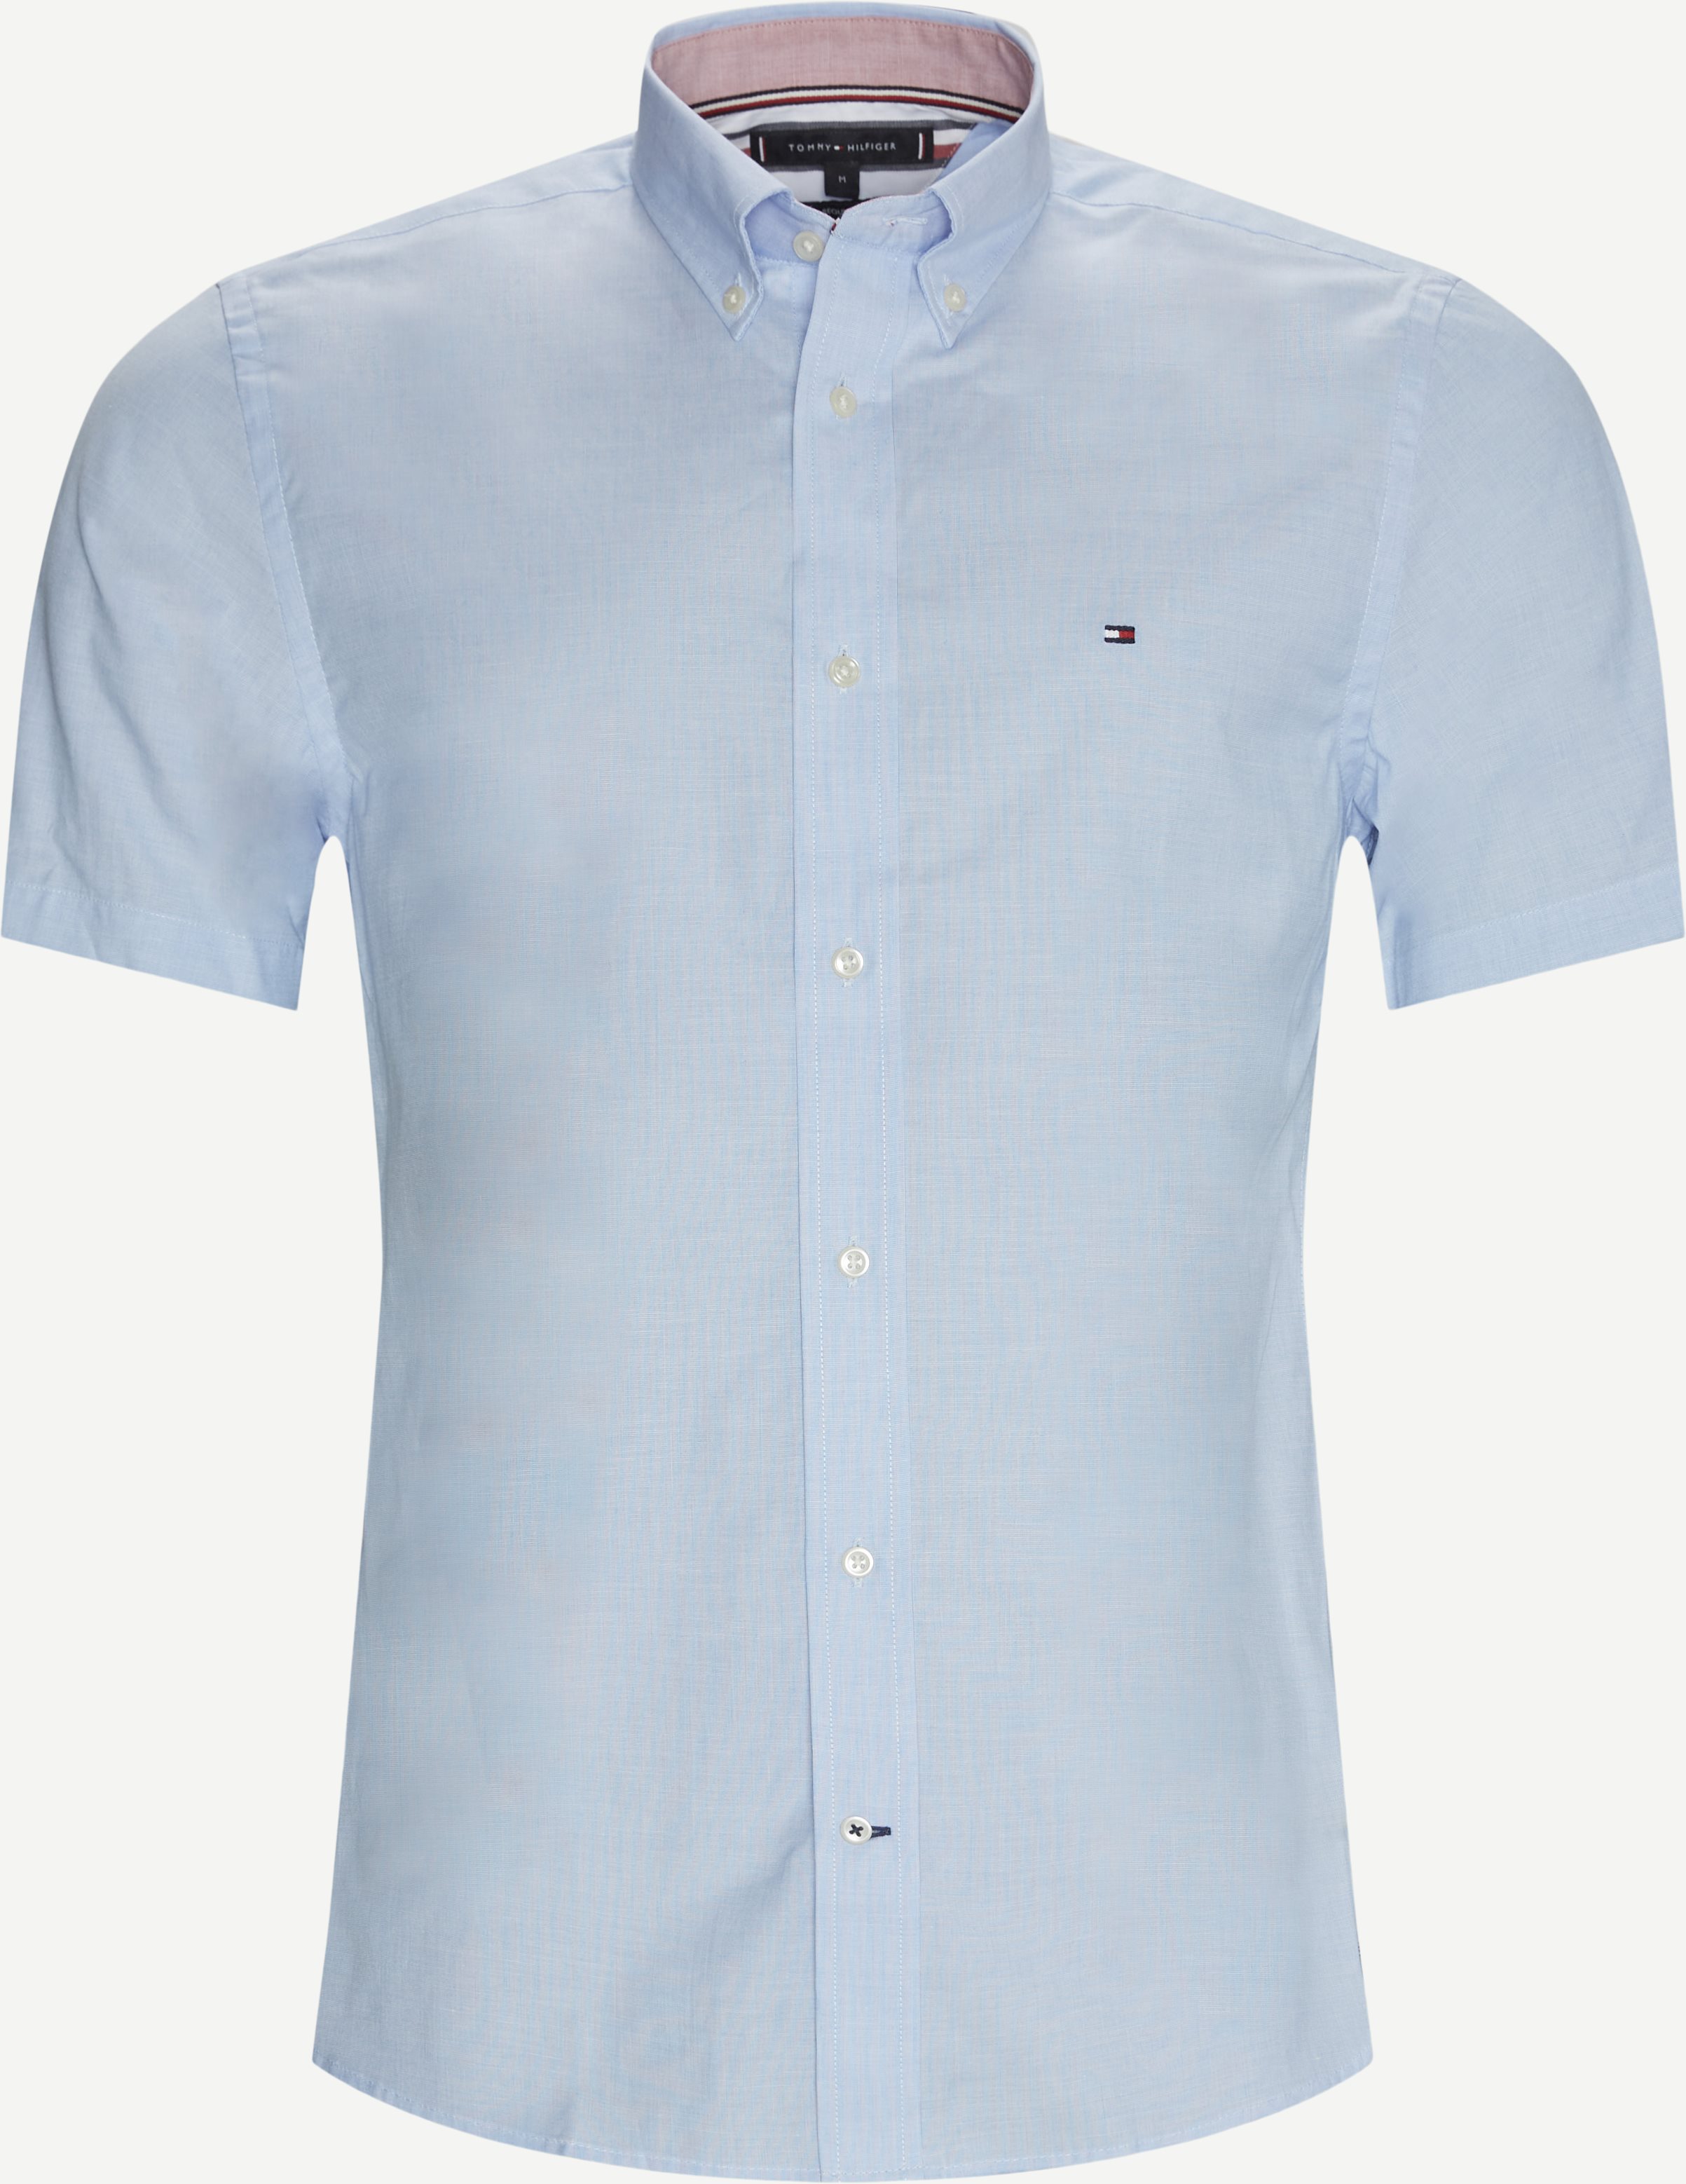 Poplin K/Æ Skjorte - Short-sleeved shirts - Regular fit - Blue